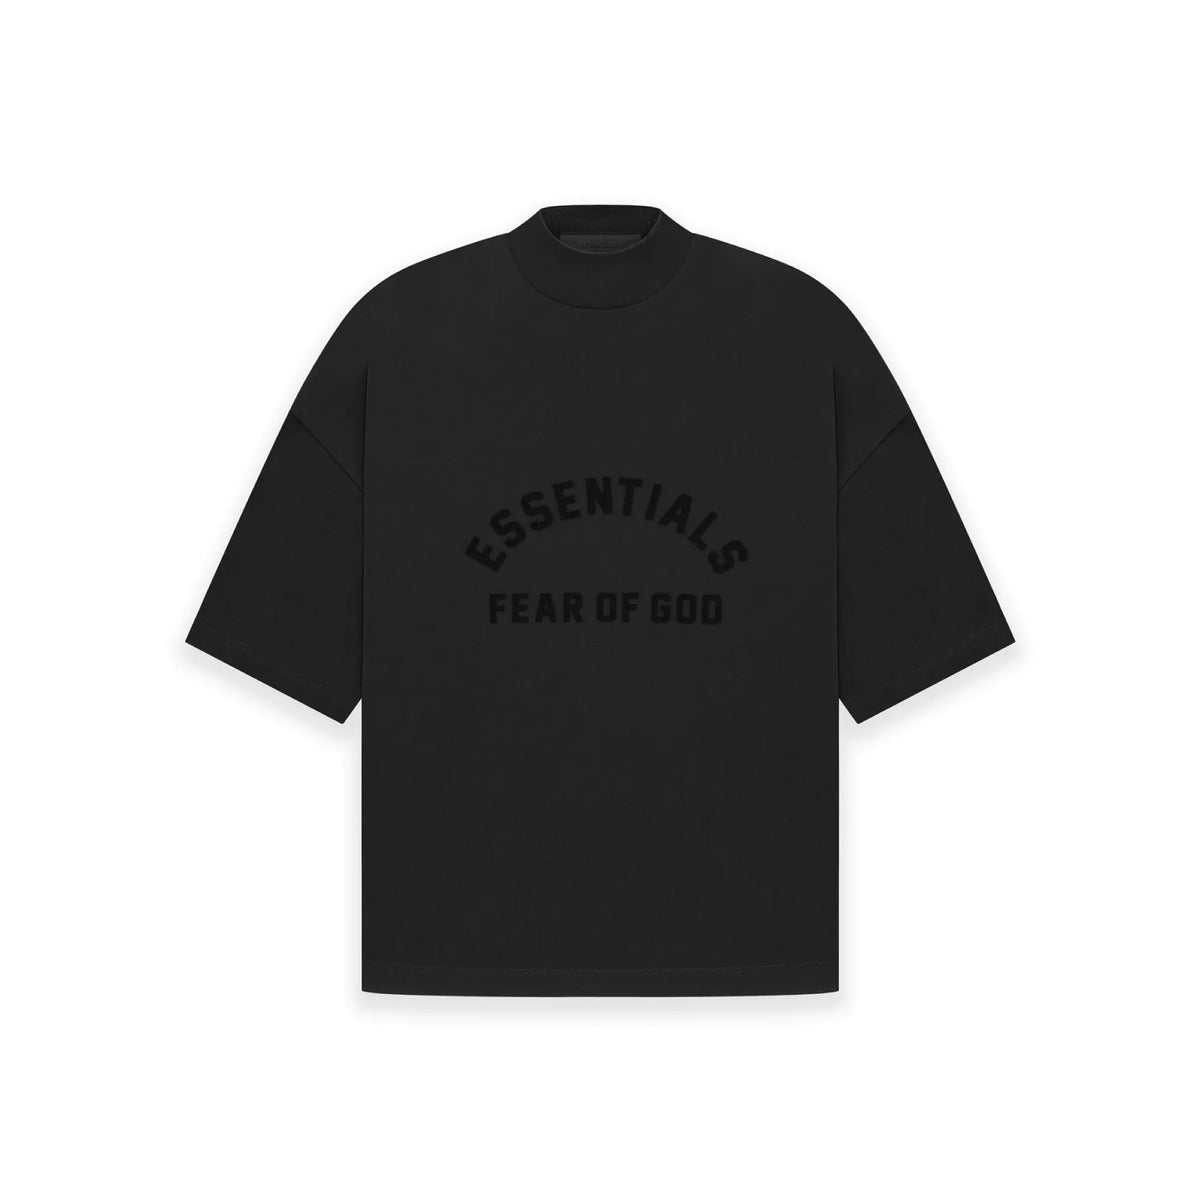 Collection) Core Shirt guter - T-Shirt T Qualität – Jordan - (SS23 OF GOD Cheap Aspennigeria in ESSENTIALS Superdry FEAR - Black Outlet Jet